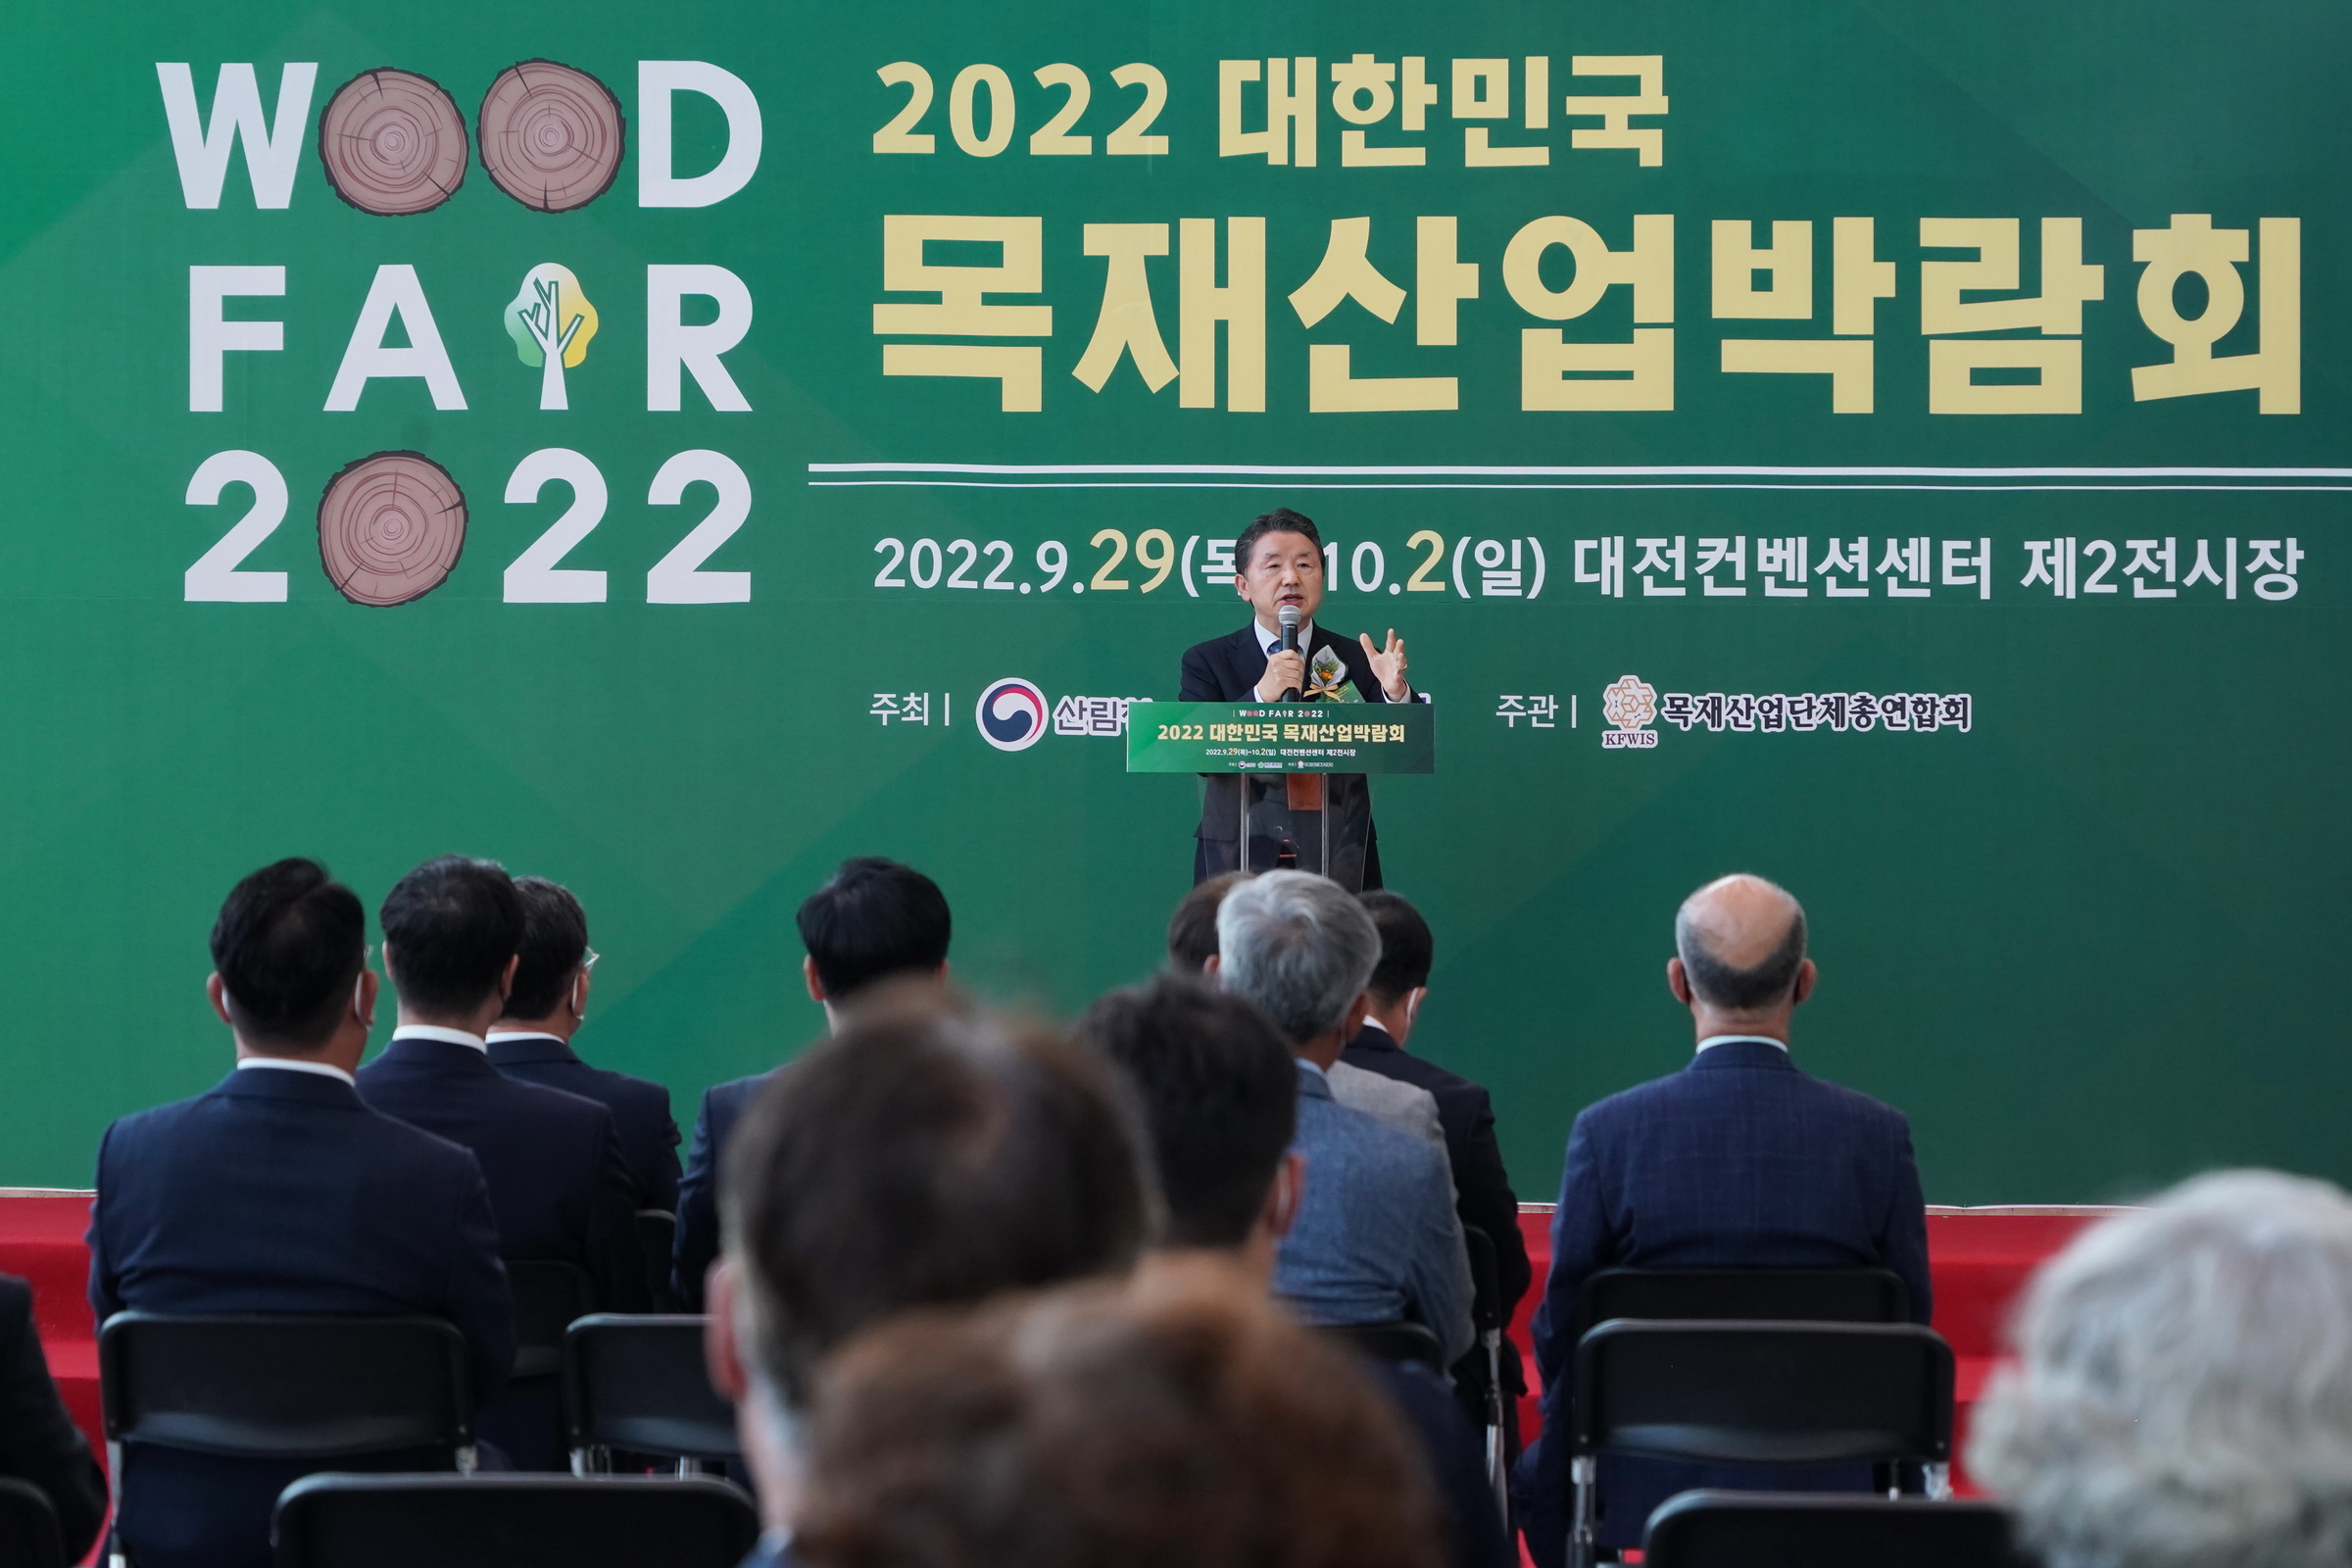 남성현 산림청장, 2022 대한민국 목재산업박람회 참석 